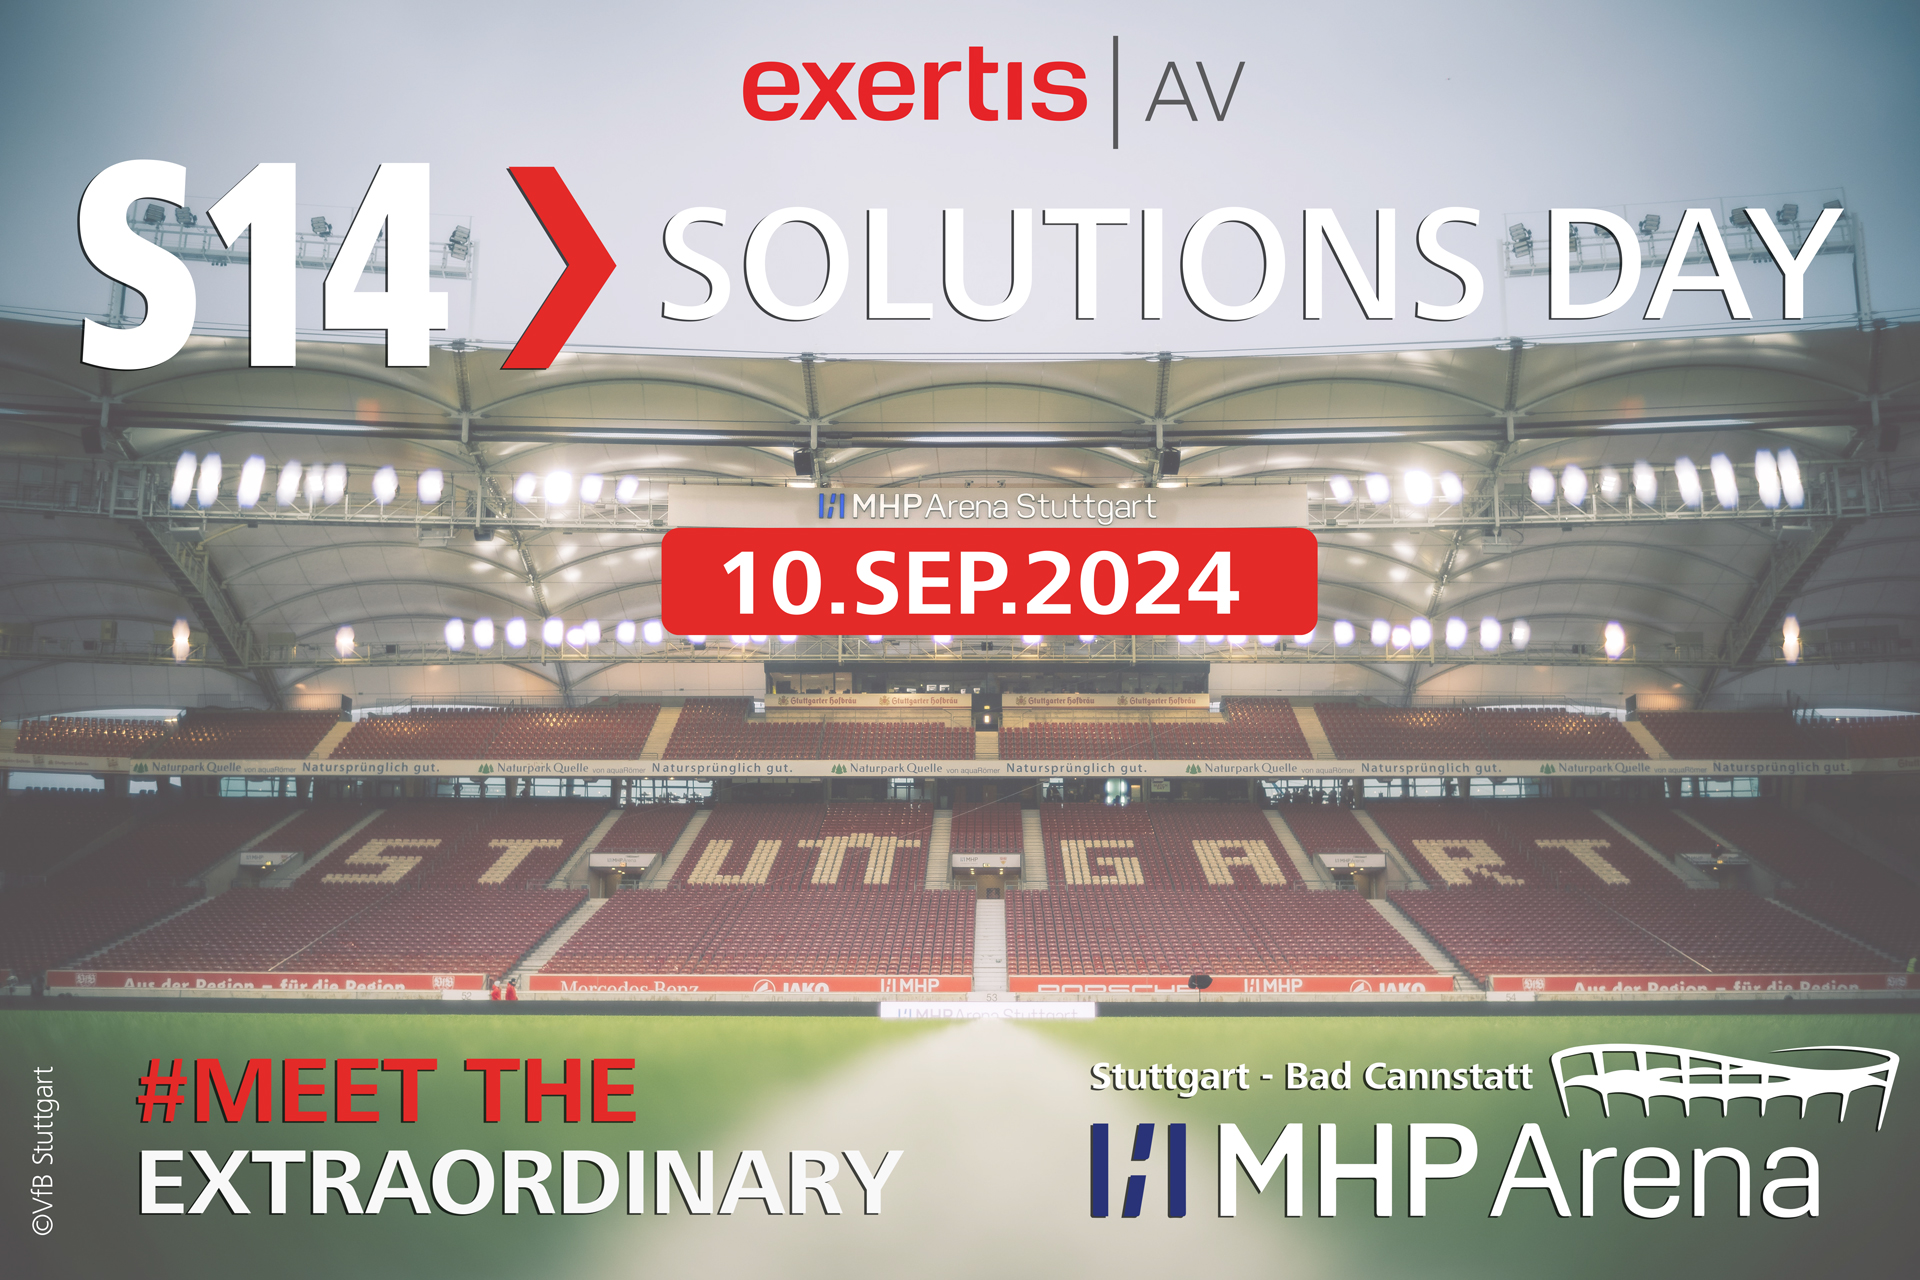 Anpfiff am 10. September beim VfB Stuttgart: S14 Solutions Day in neuer Location